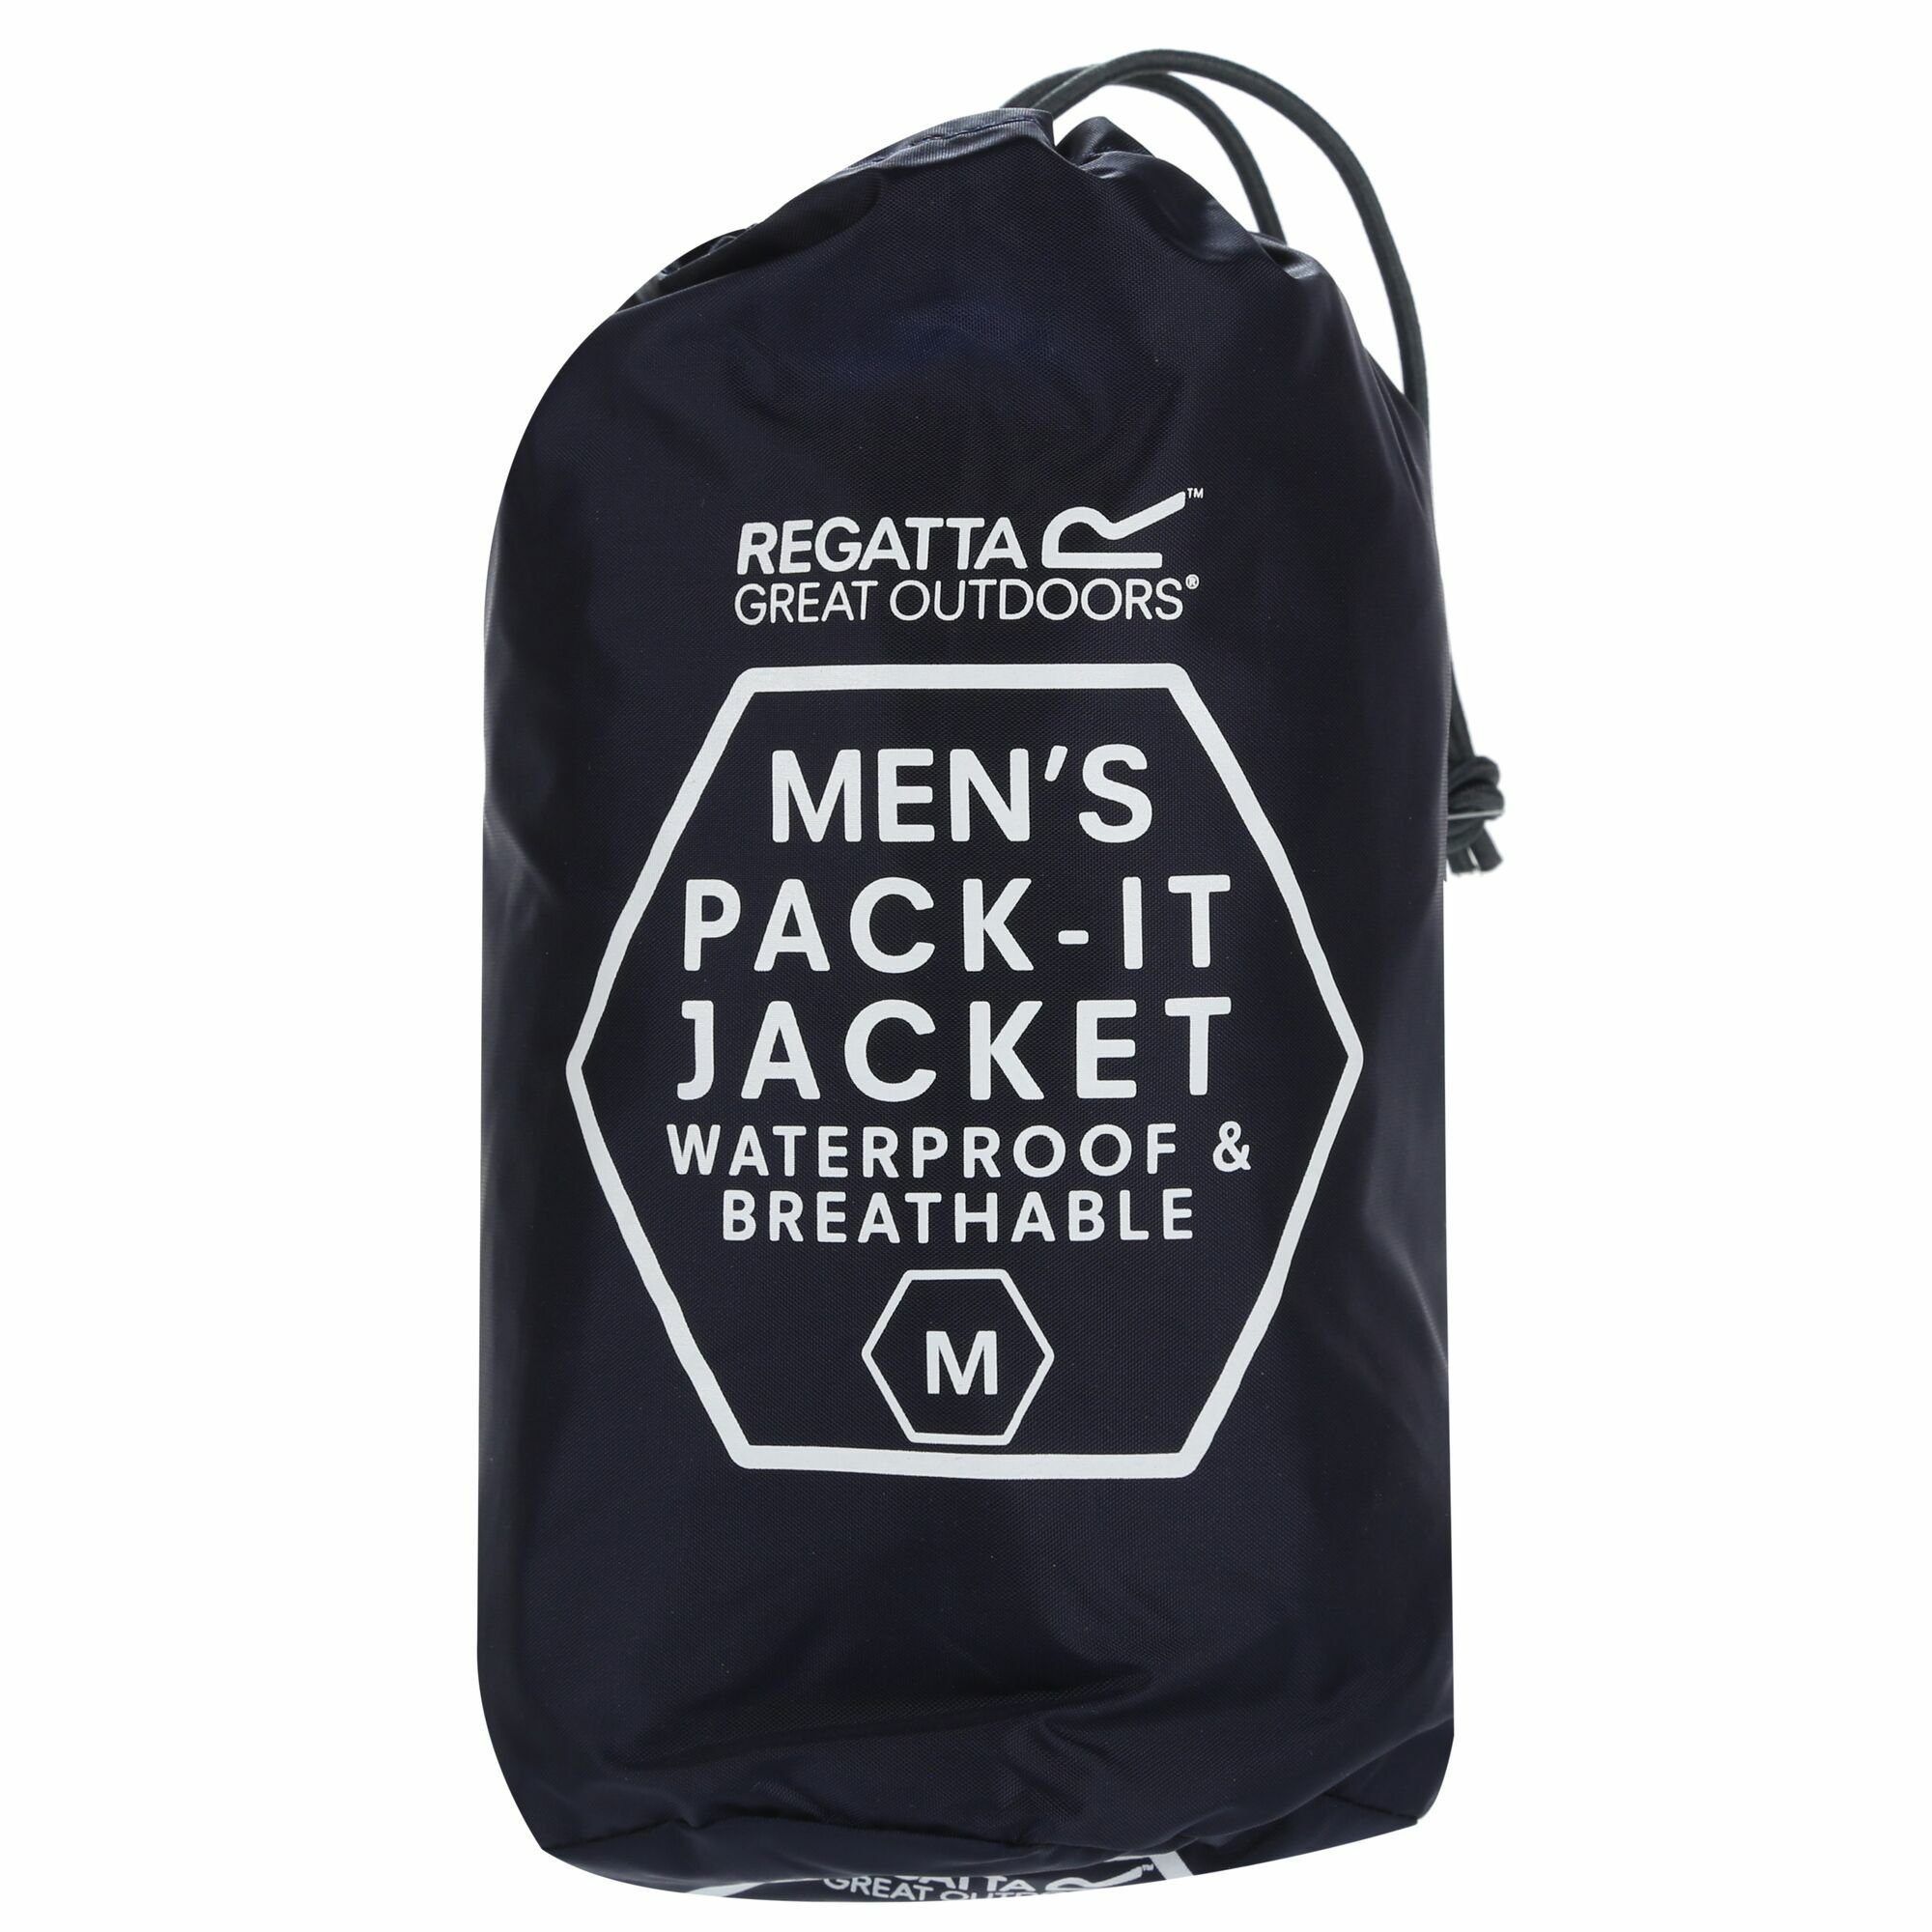 Packbeutel Pack-It mit Regatta Regenjacke für Herren, Navy III